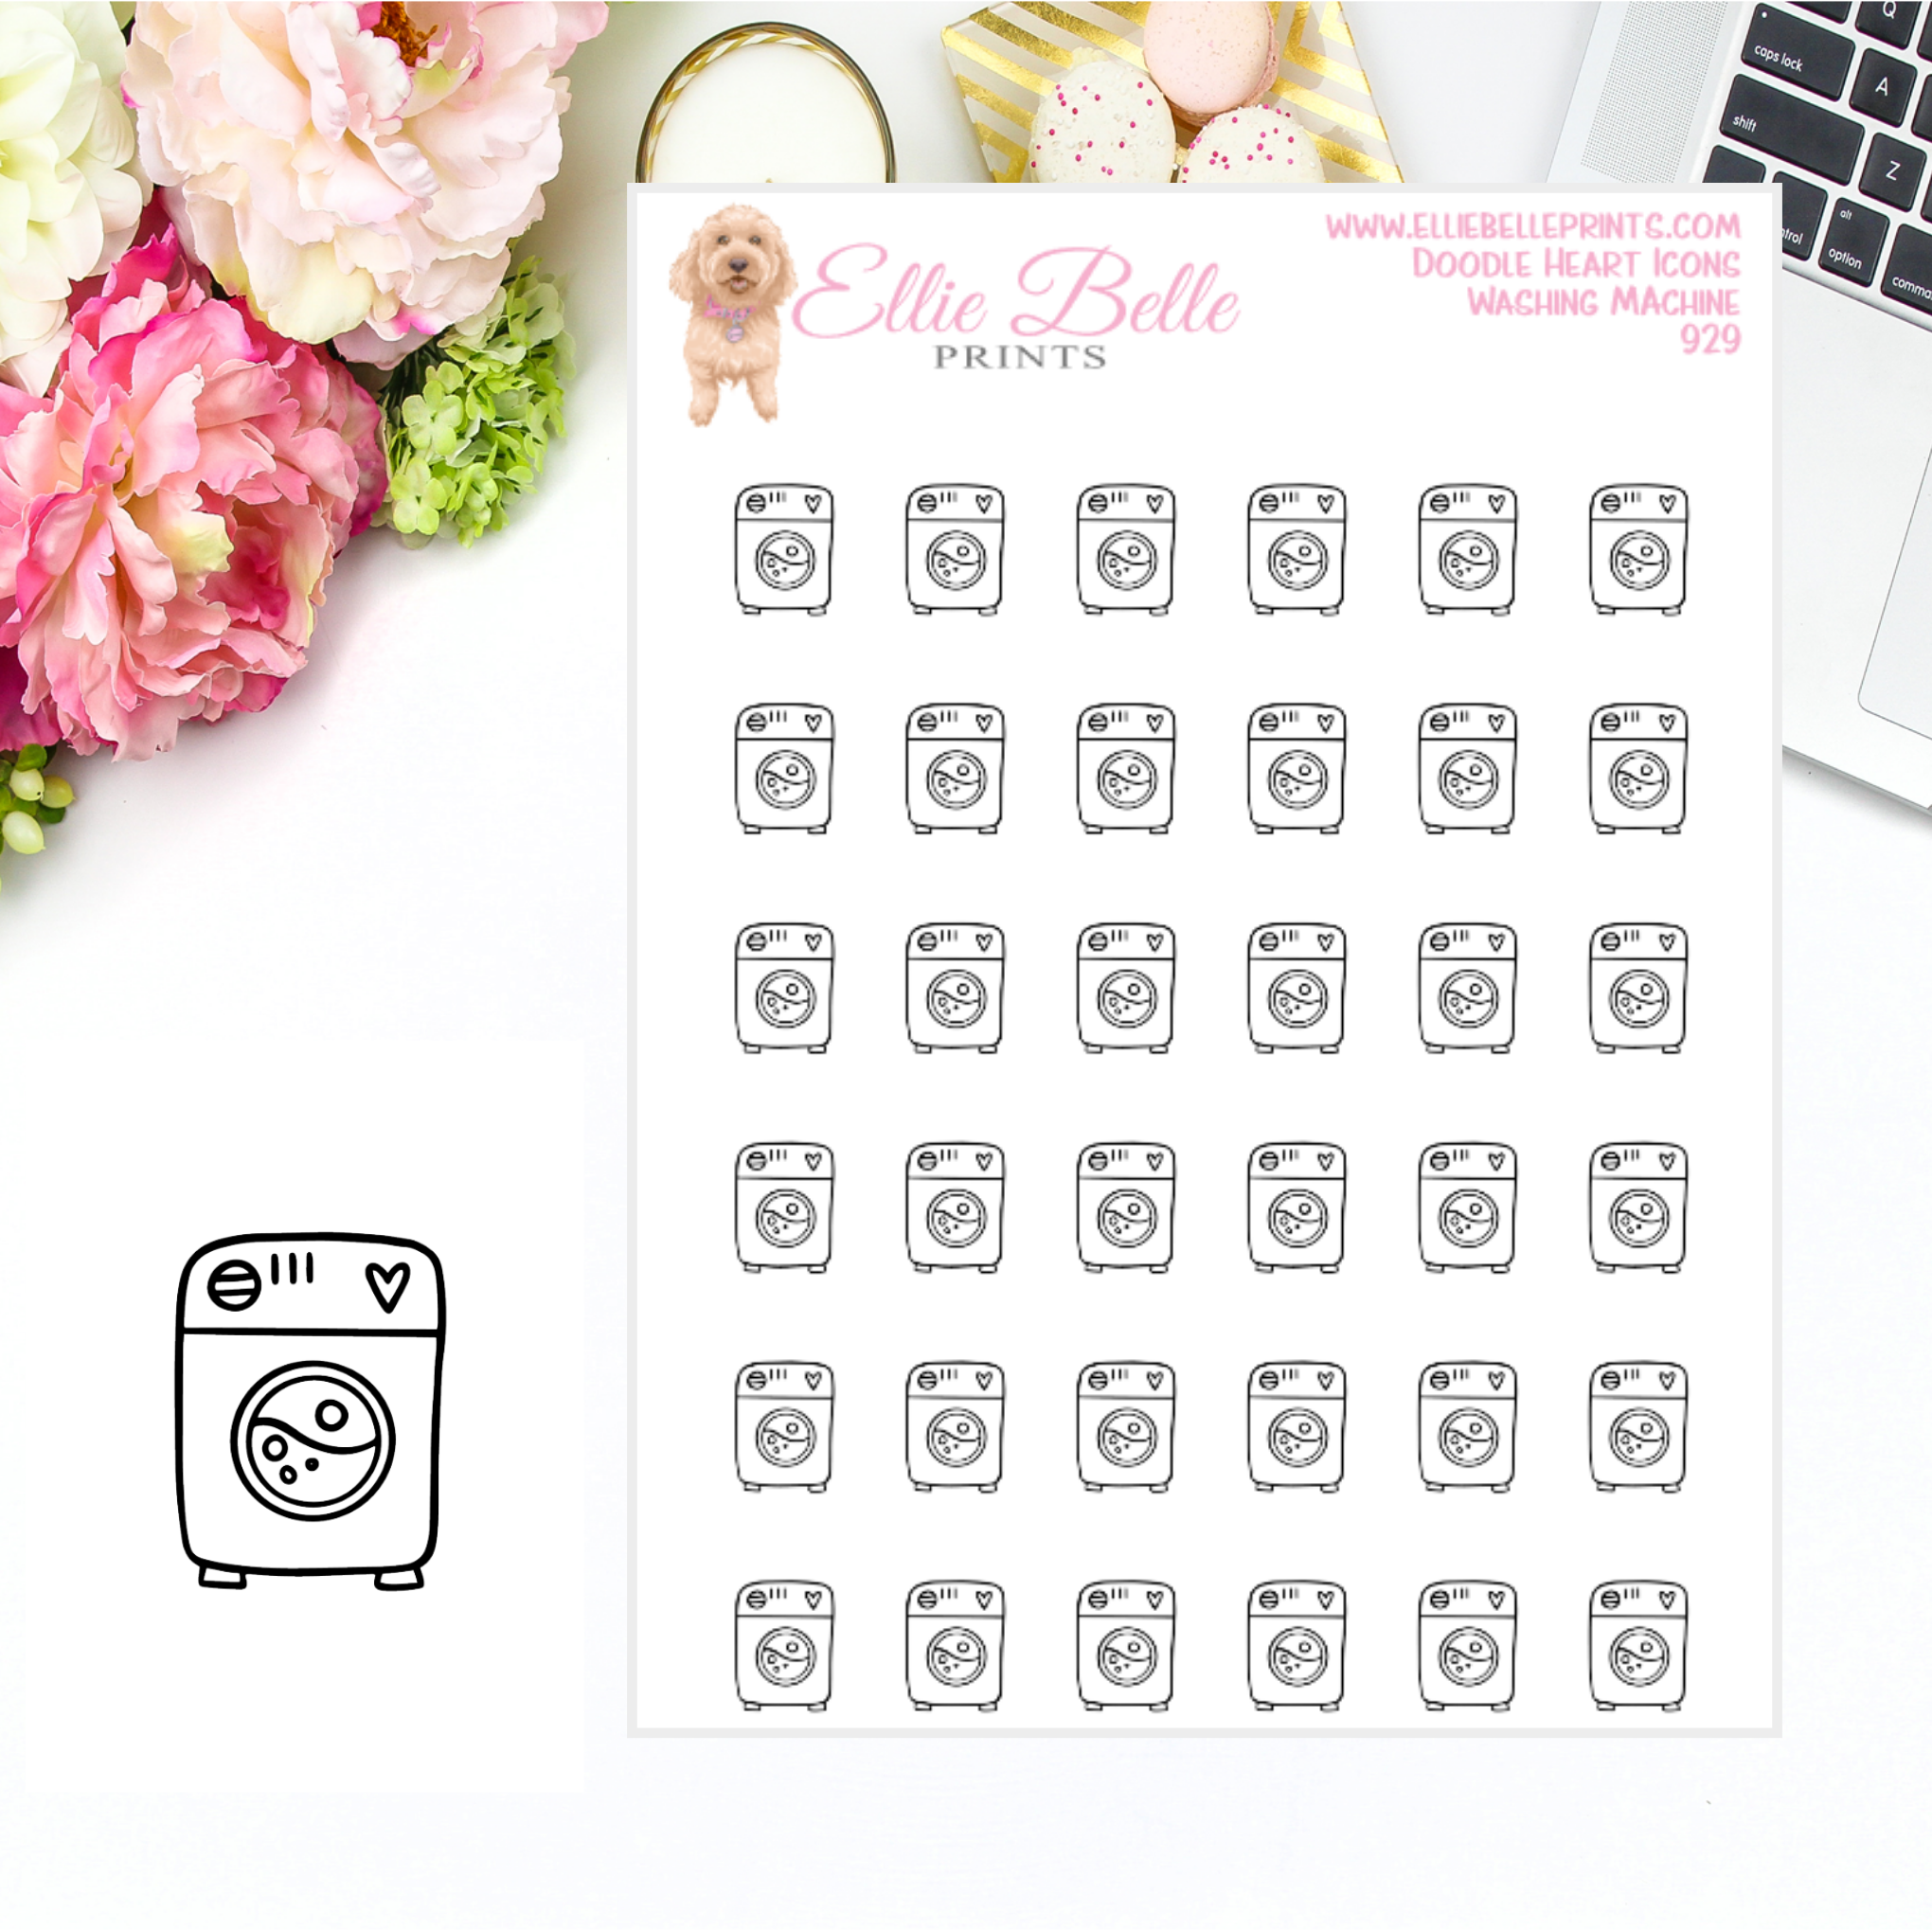 Washing Machine - Doodle Heart Icons